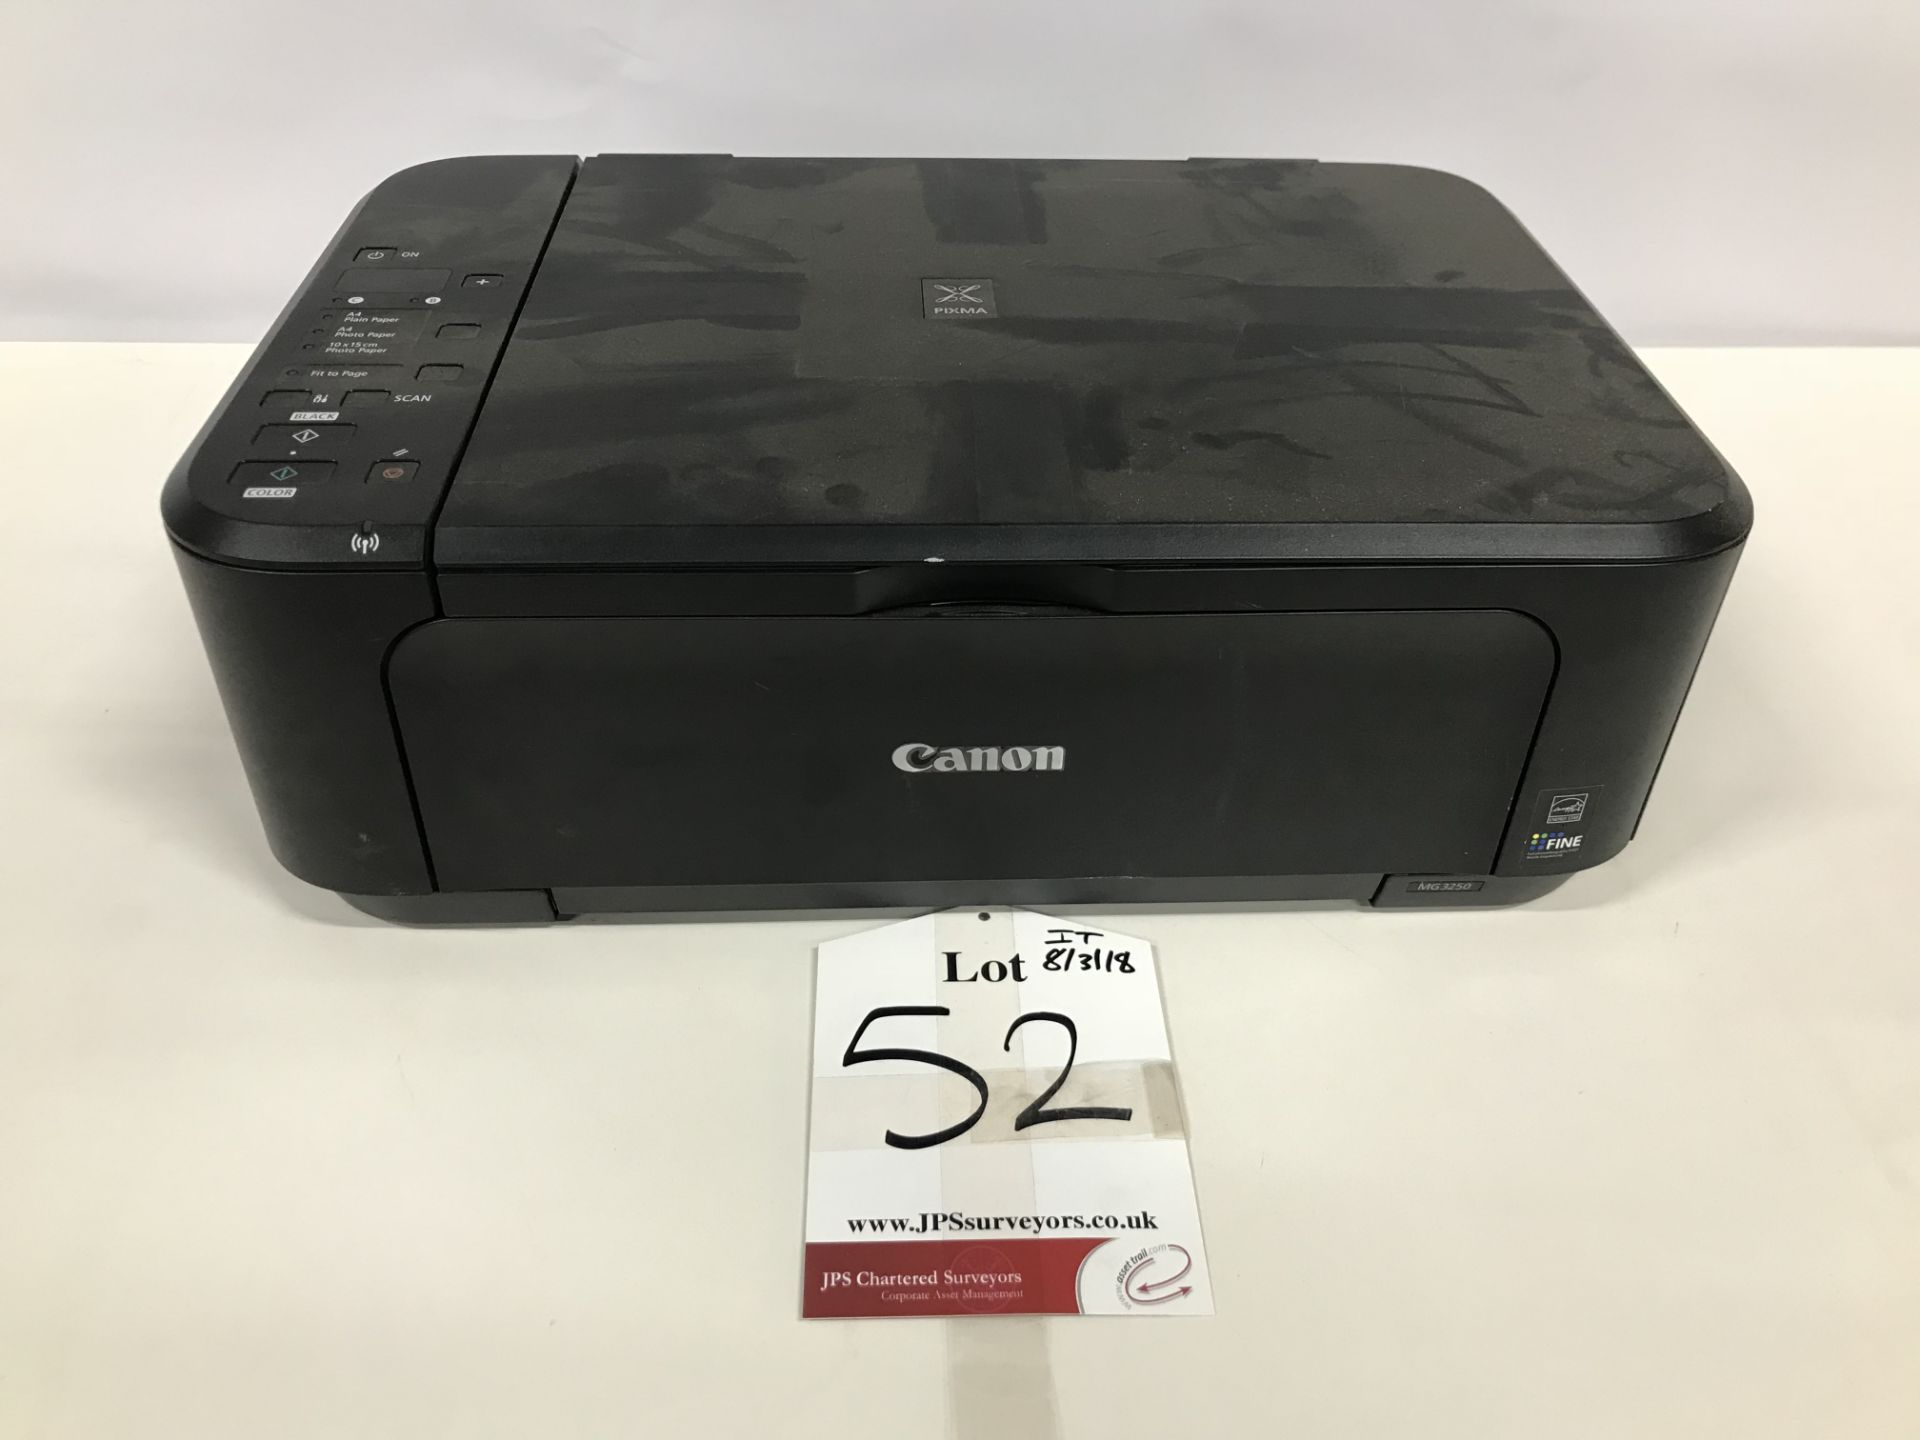 Canon Printer/Copier